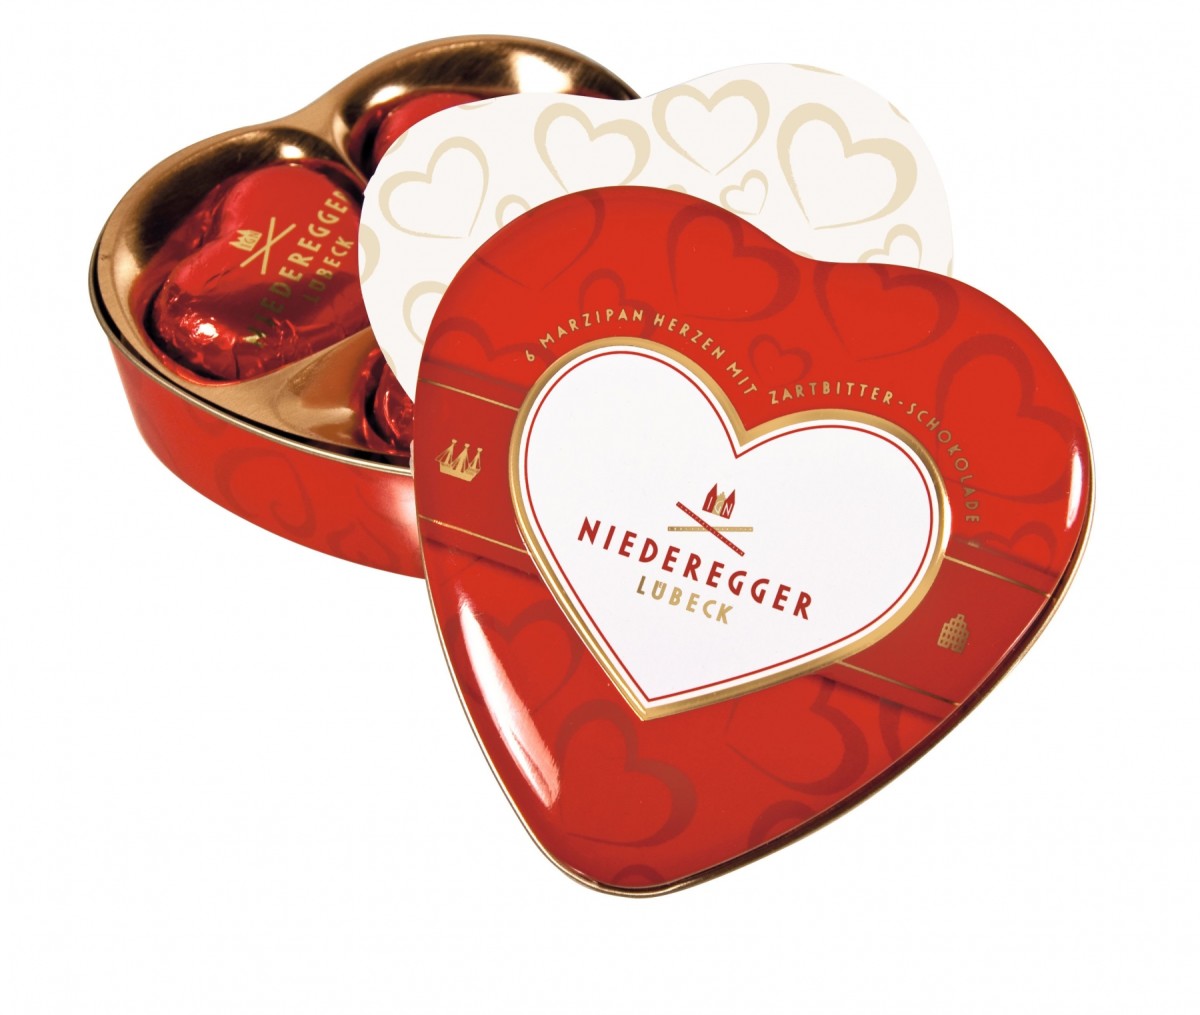 Quality Valentine's Day Chocolates to Enjoy